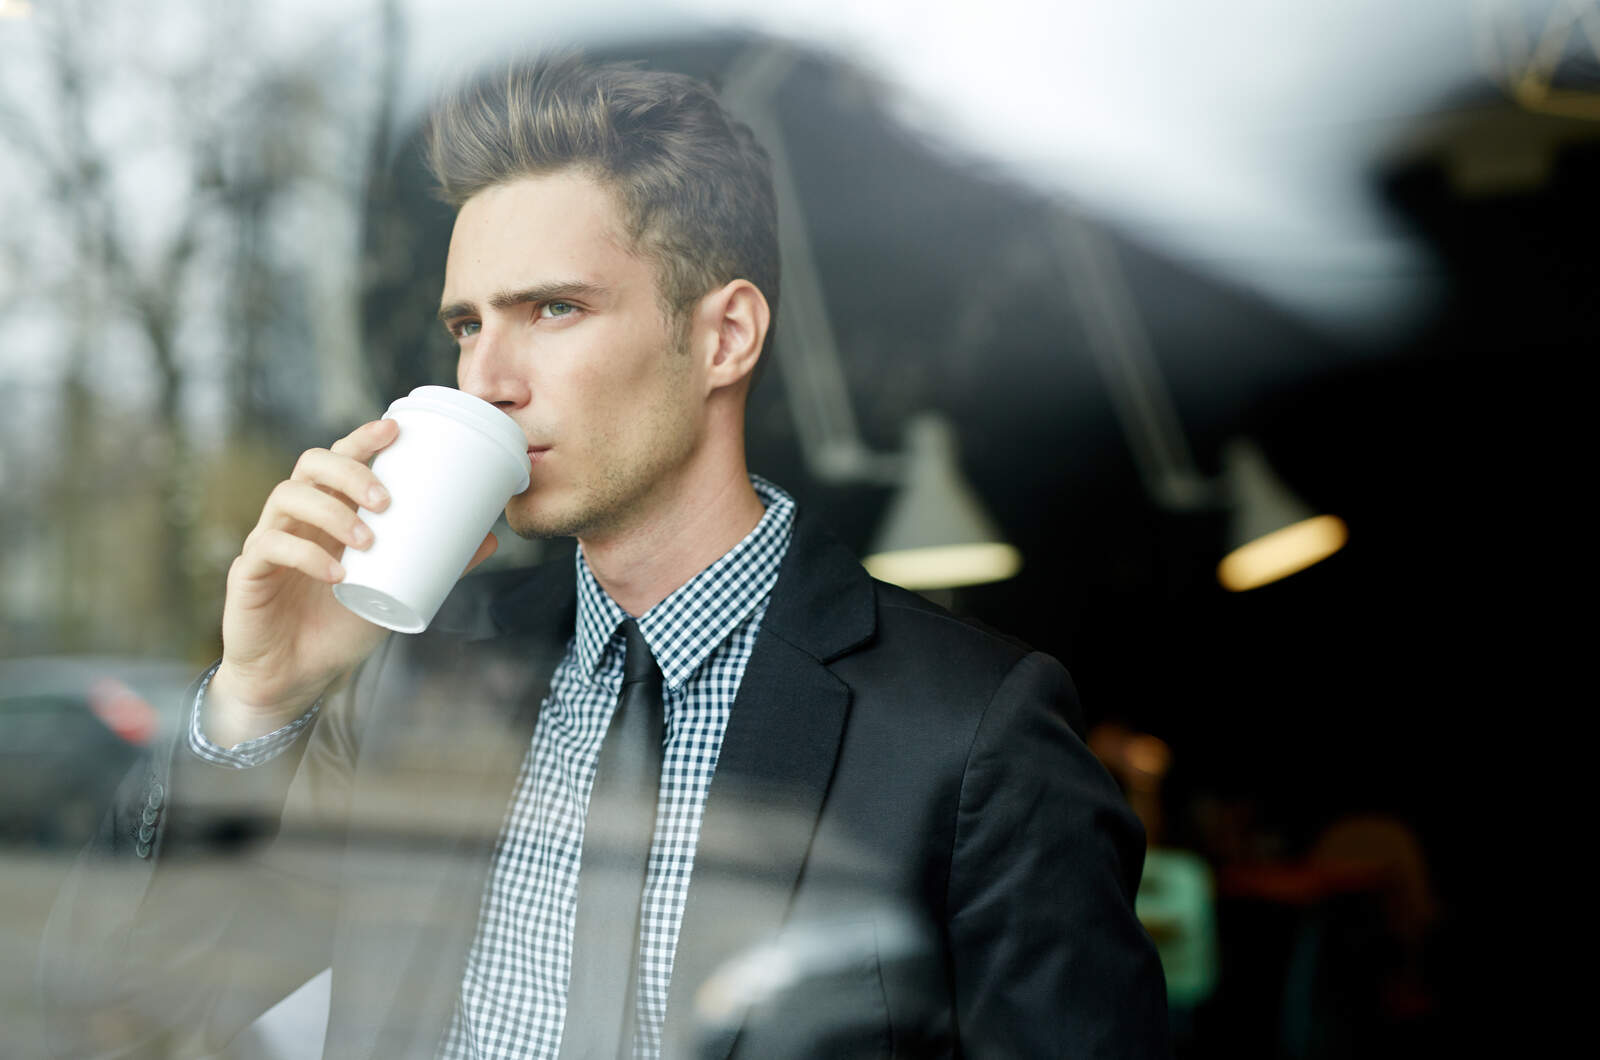 giovane uomo che beve un caffè e guarda attraverso la finestra